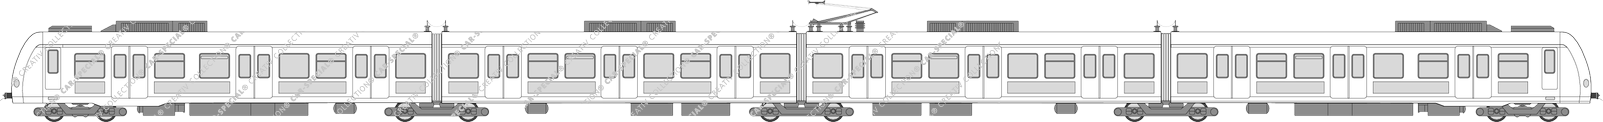 Schienenpersonenverkehr S-Bahn, ET 423, Duewag/Siemens (Rail_036)